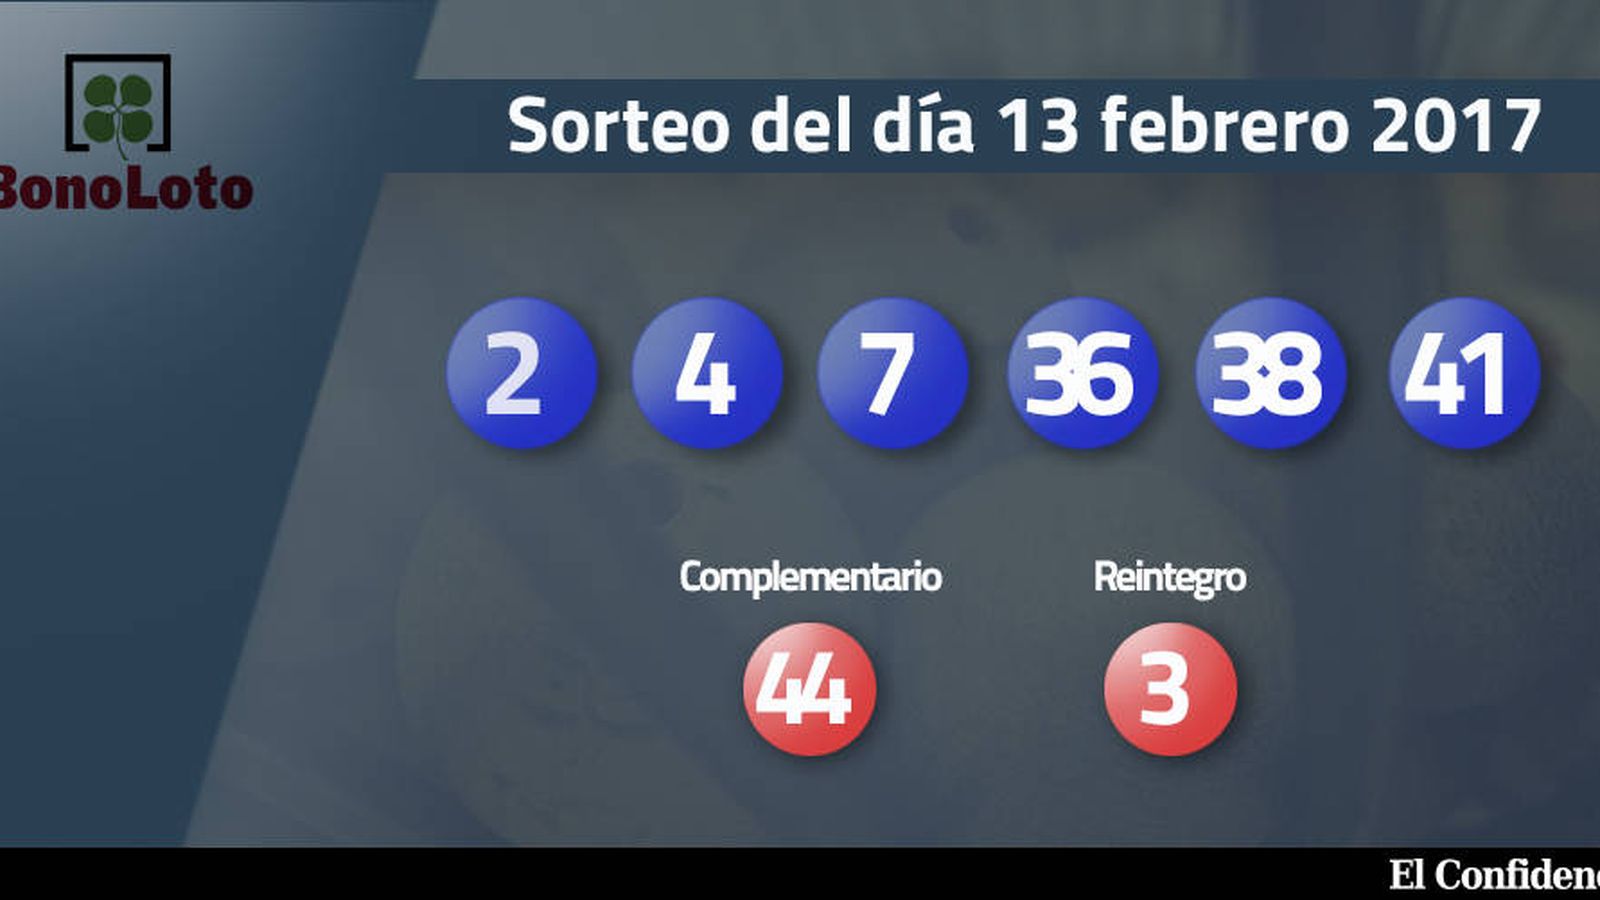 Foto: Resultados del sorteo de la Bonoloto del 13 febrero 2017 (EC)